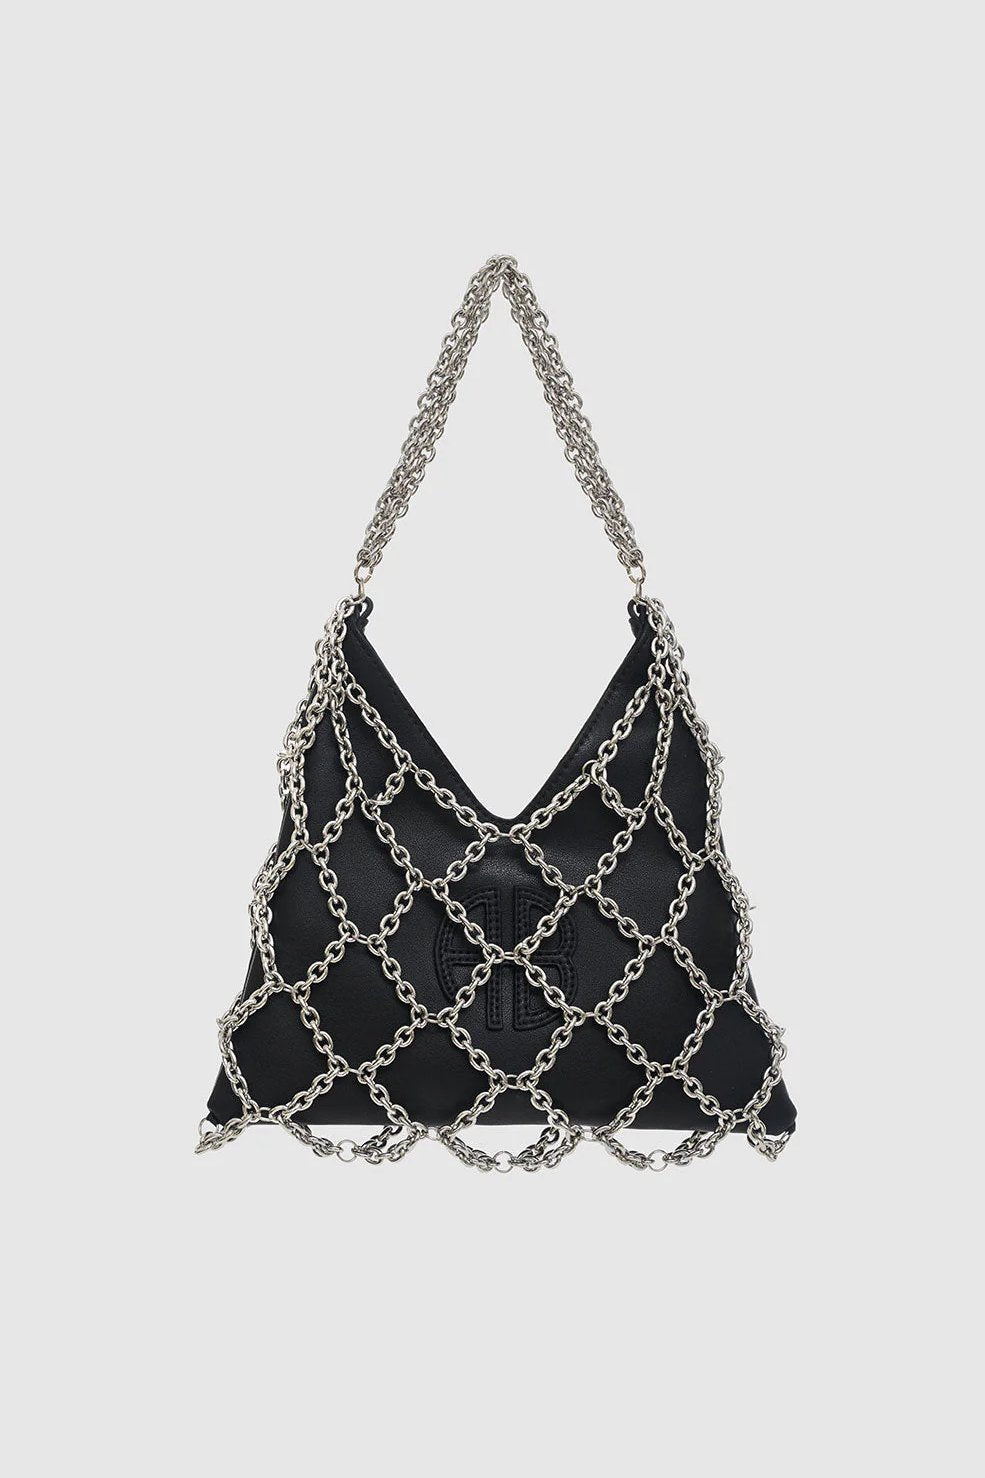 Anine Bing | Håndtaske | One Mini Gaia Chain Bag, black and silver